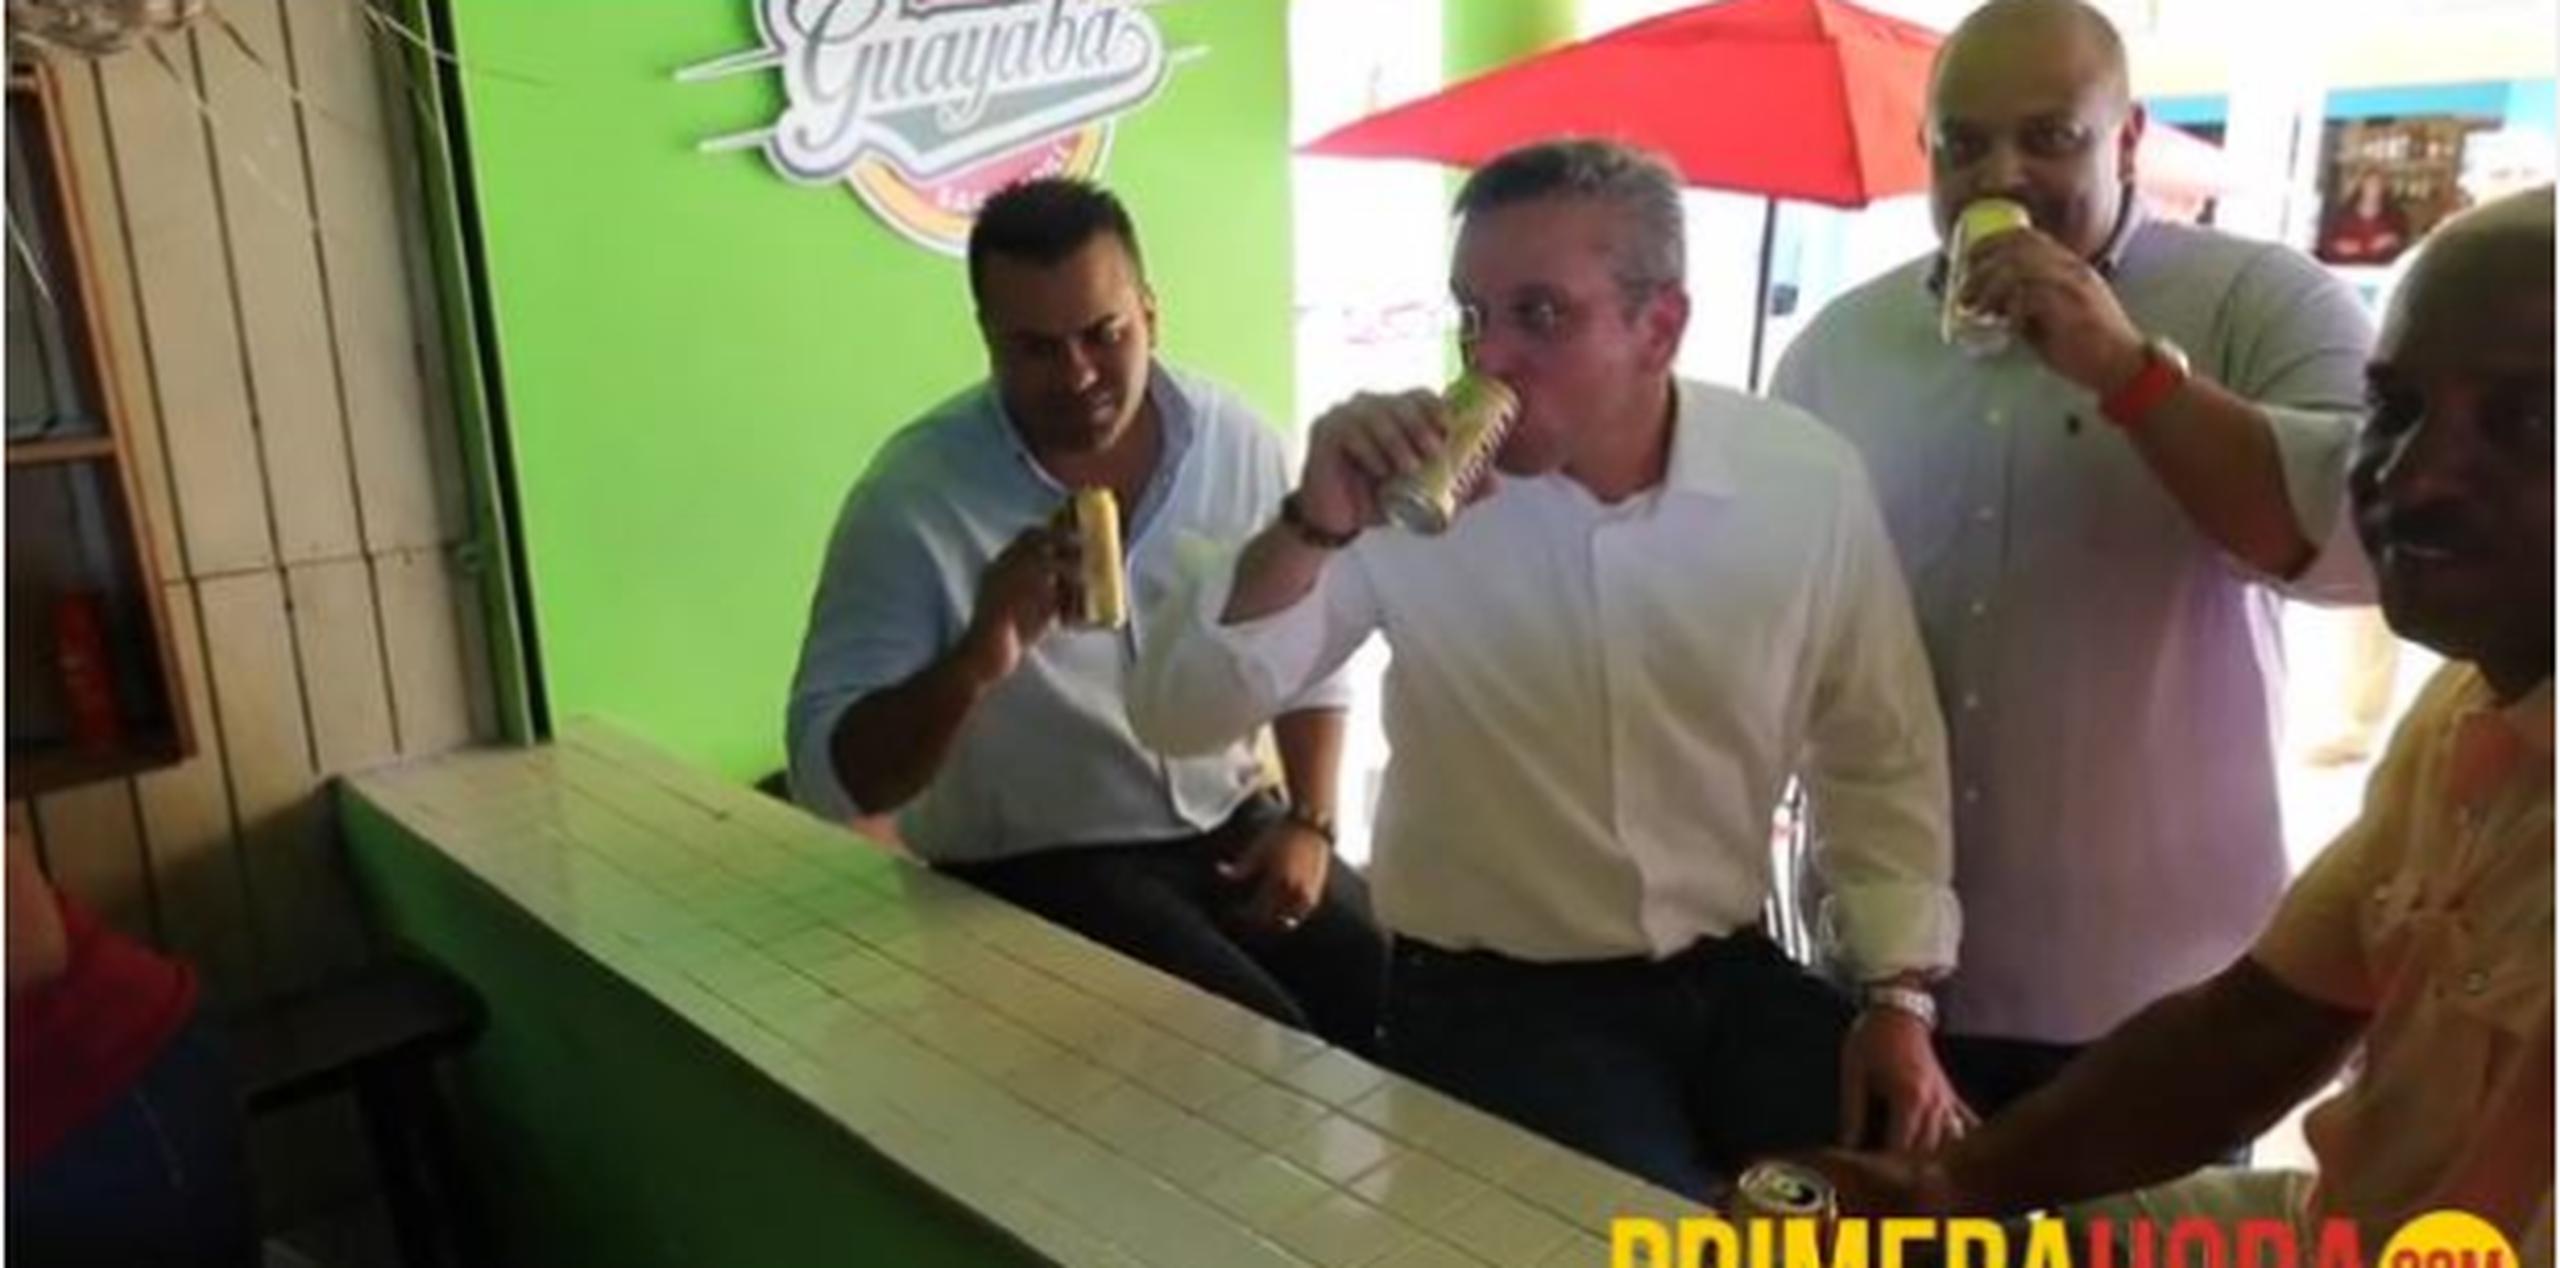 El gobernador se refresca con una cerveza en uno de los quioscos durante su recorrido por el rehabilitado malecón de Patillas. (david.villafane@gfrmedia.com)